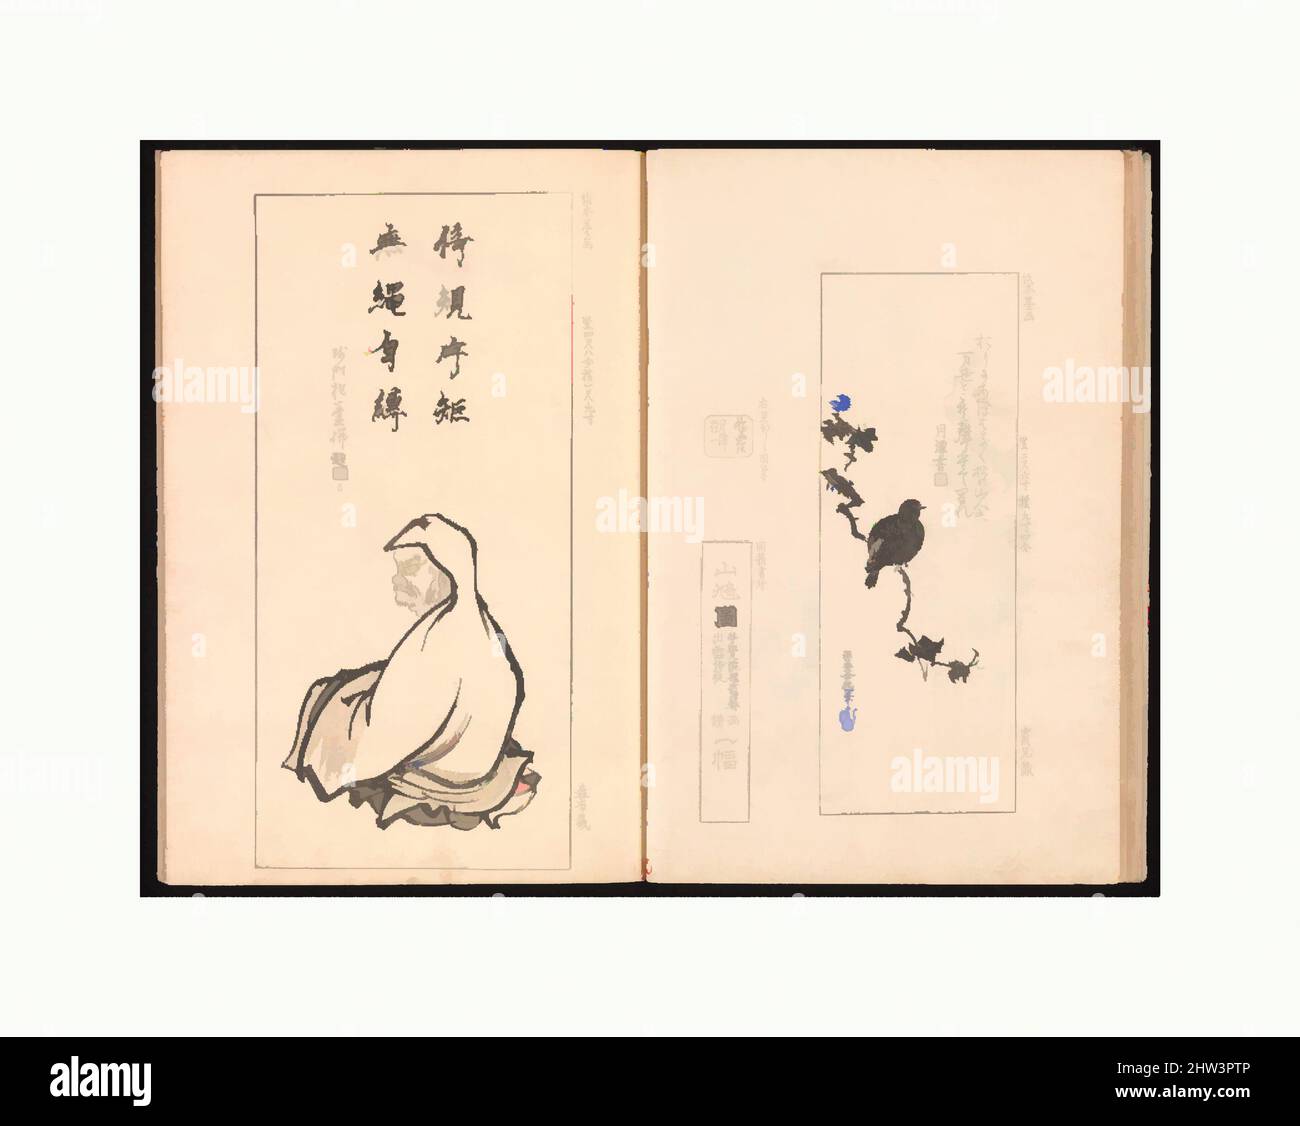 Art inspiré par 池田孤邨画 『抱一上人真蹟鏡』, miroir de l'œuvre authentique de Monk Hōitsu (Hōitsu shōnin shinseki kagami), période Edo (1615–1868), 1817, Japon, ensemble de deux livres imprimés en bois; encre et couleur sur papier, image (a): 10 1/16 x 7 3/16 x 5/16 po. (25,5 x 18,2 x 0,8 cm), Livres illustrés, œuvres classiques modernisées par Artotop avec une touche de modernité. Formes, couleur et valeur, impact visuel accrocheur sur l'art émotions par la liberté d'œuvres d'art d'une manière contemporaine. Un message intemporel qui cherche une nouvelle direction créative. Artistes qui se tournent vers le support numérique et créent le NFT Artotop Banque D'Images